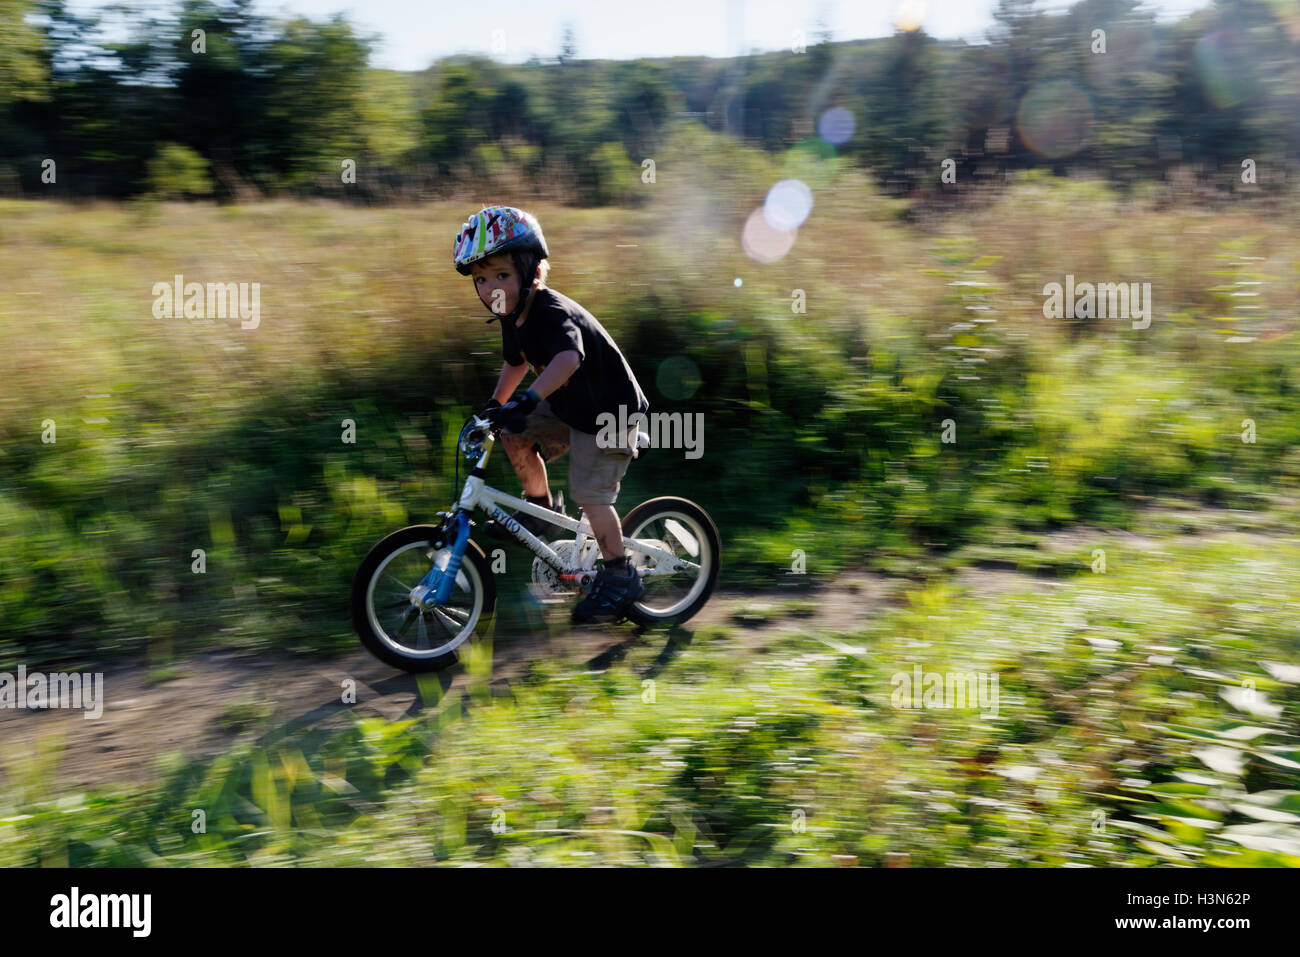 Ein Junge (4 Jahre) Junge mit seinem Fahrrad in den Wald auf einem Mountain bike Pumpe, Anschluss Stockfoto